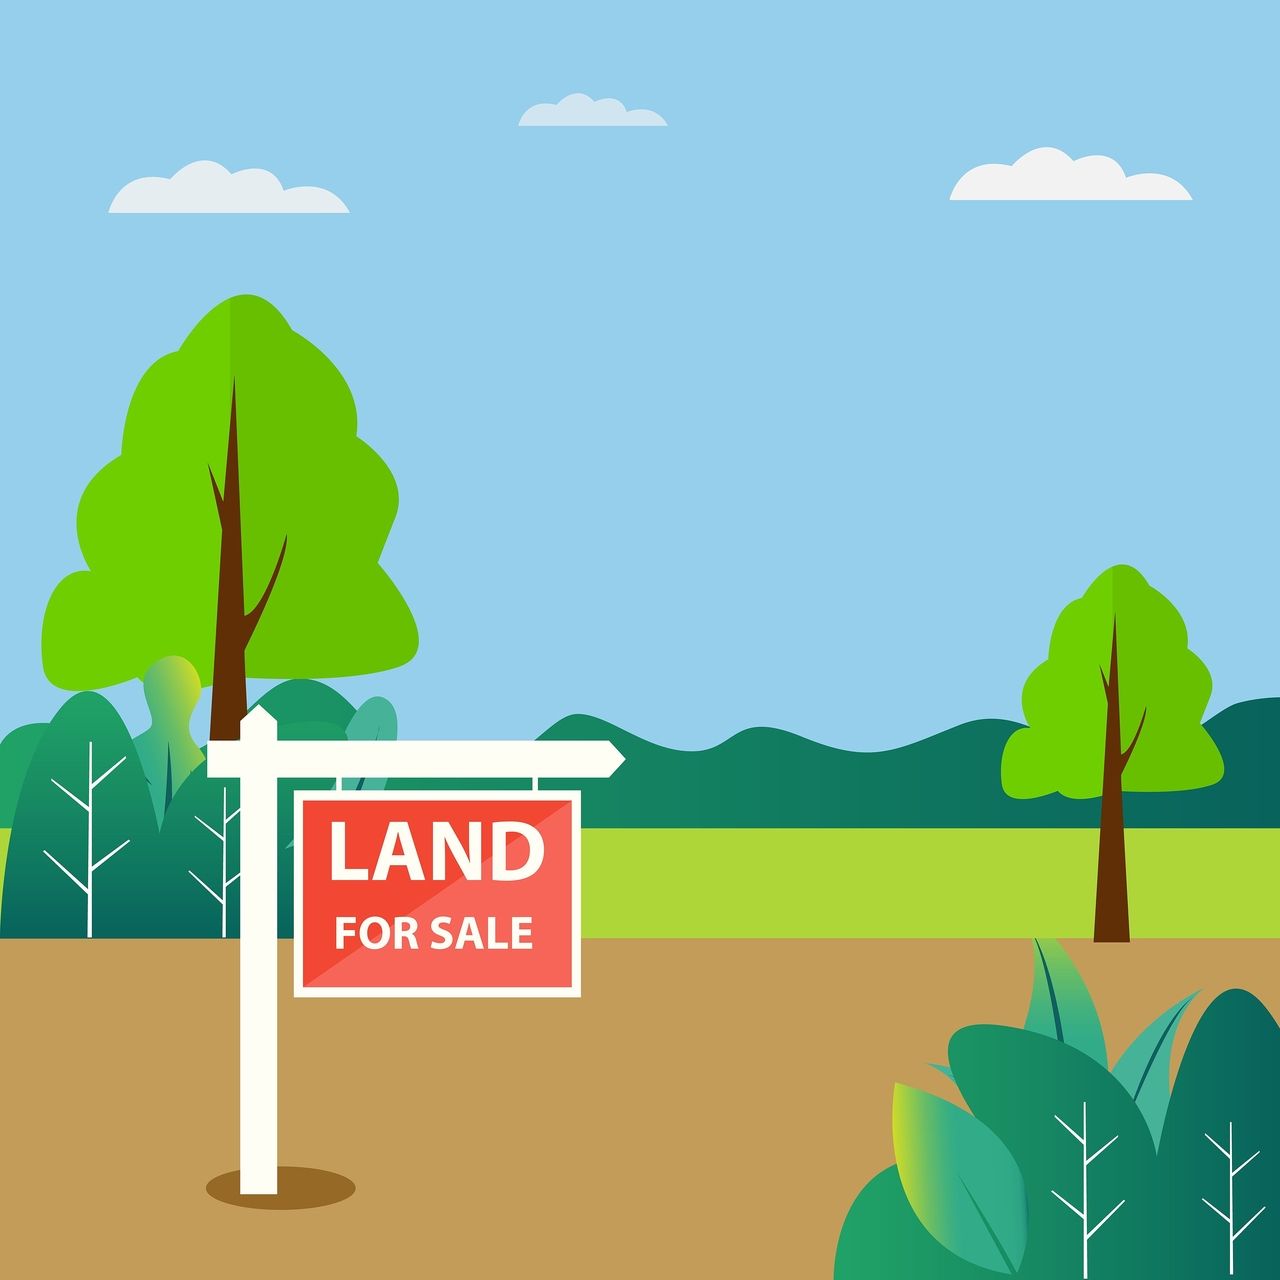 鹿児島で土地を売却する際に発生する費用